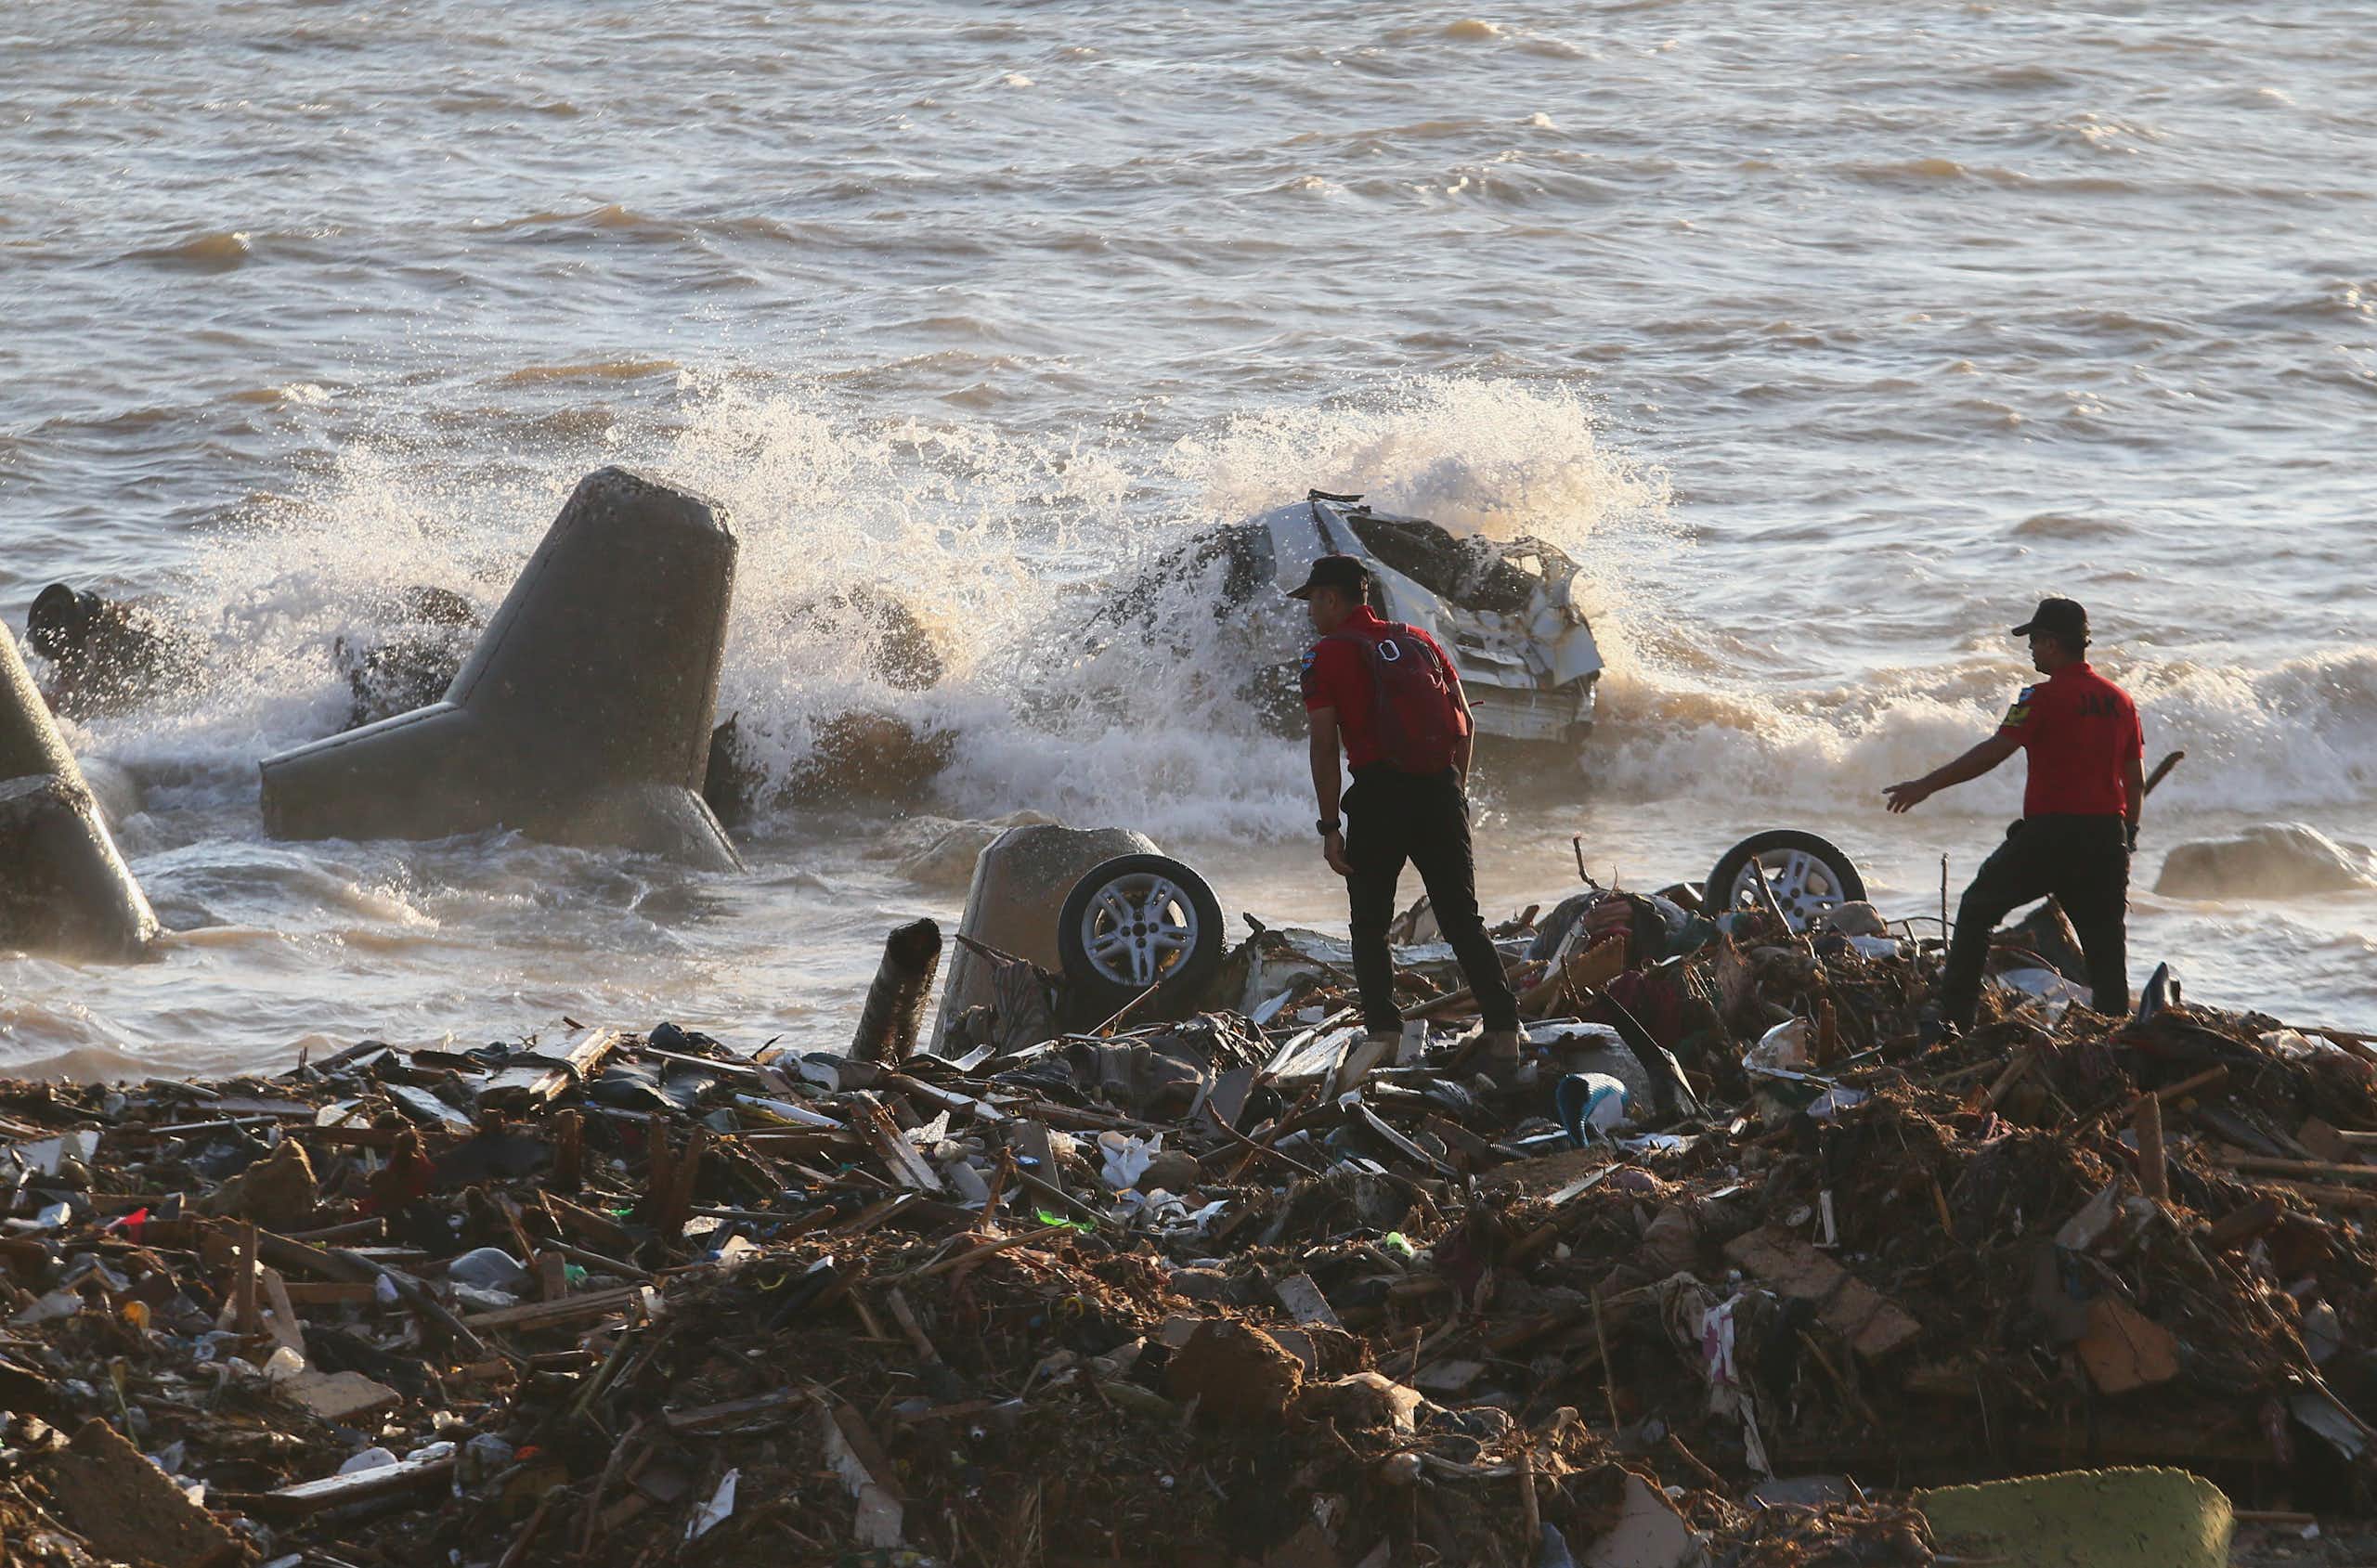 Men searching through debris.